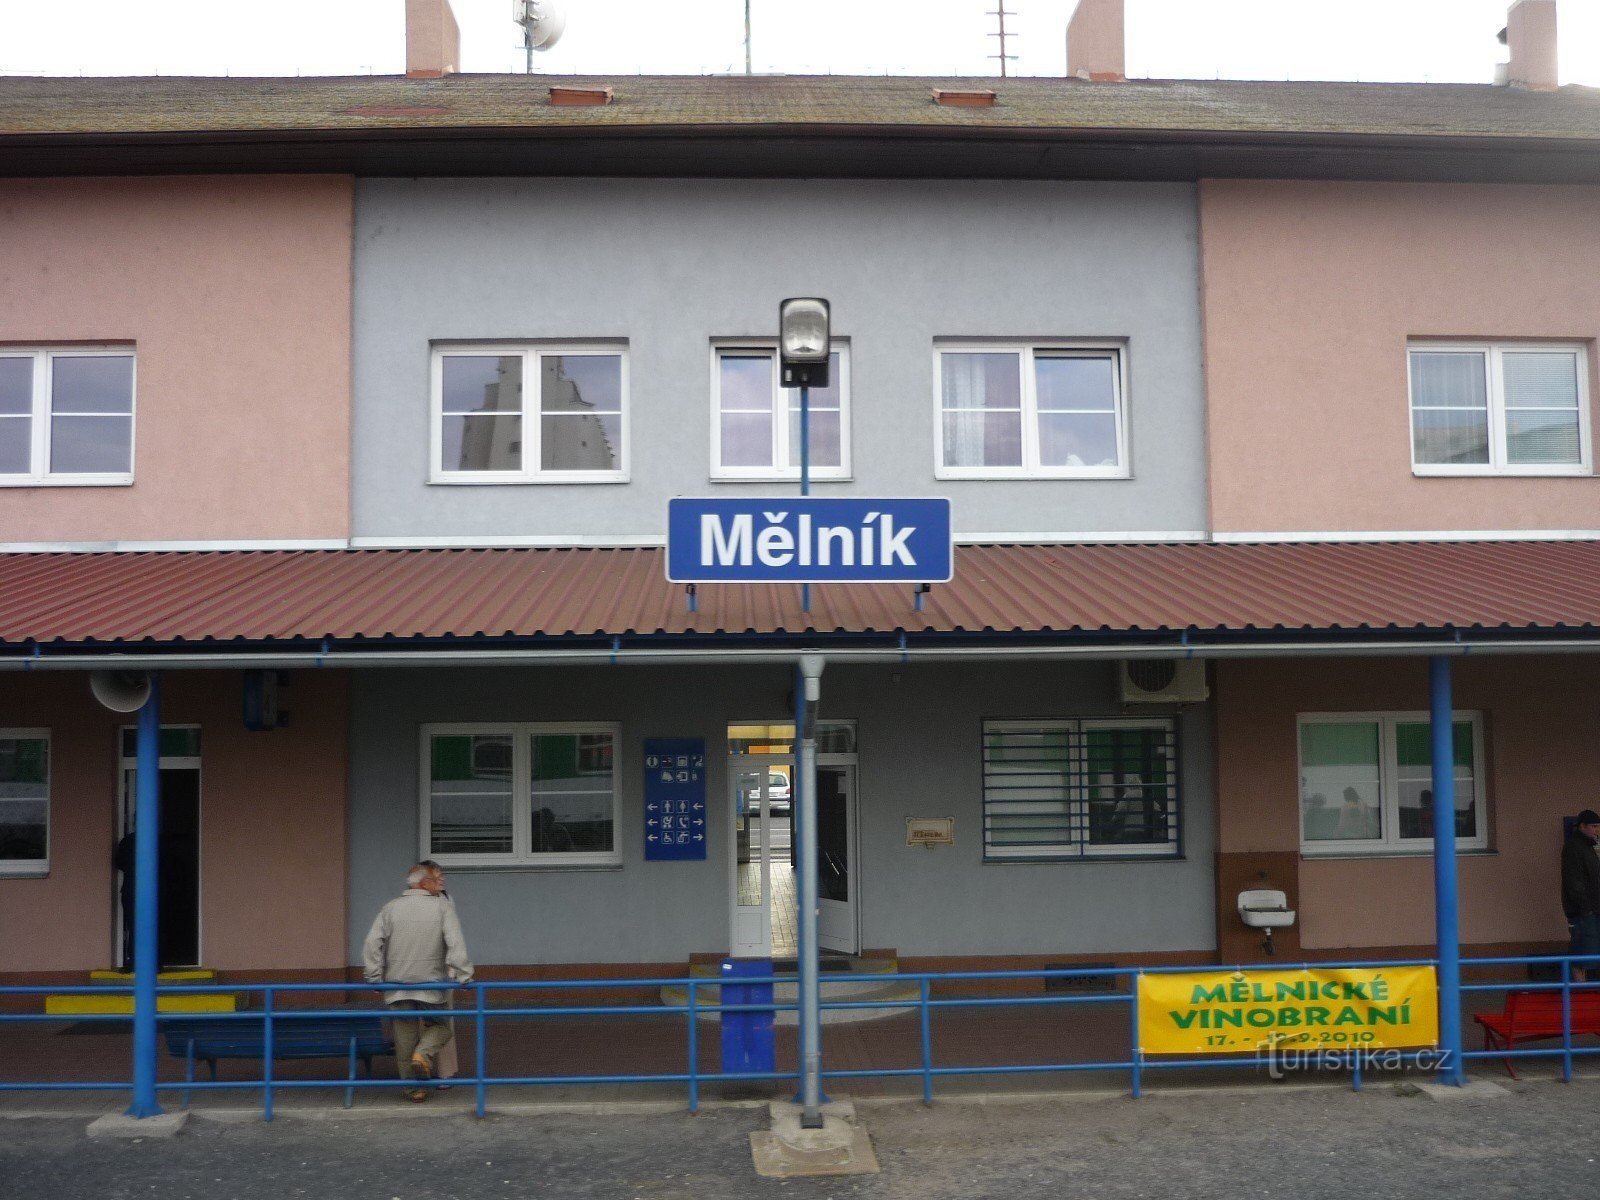 Dworzec kolejowy w Mielniku